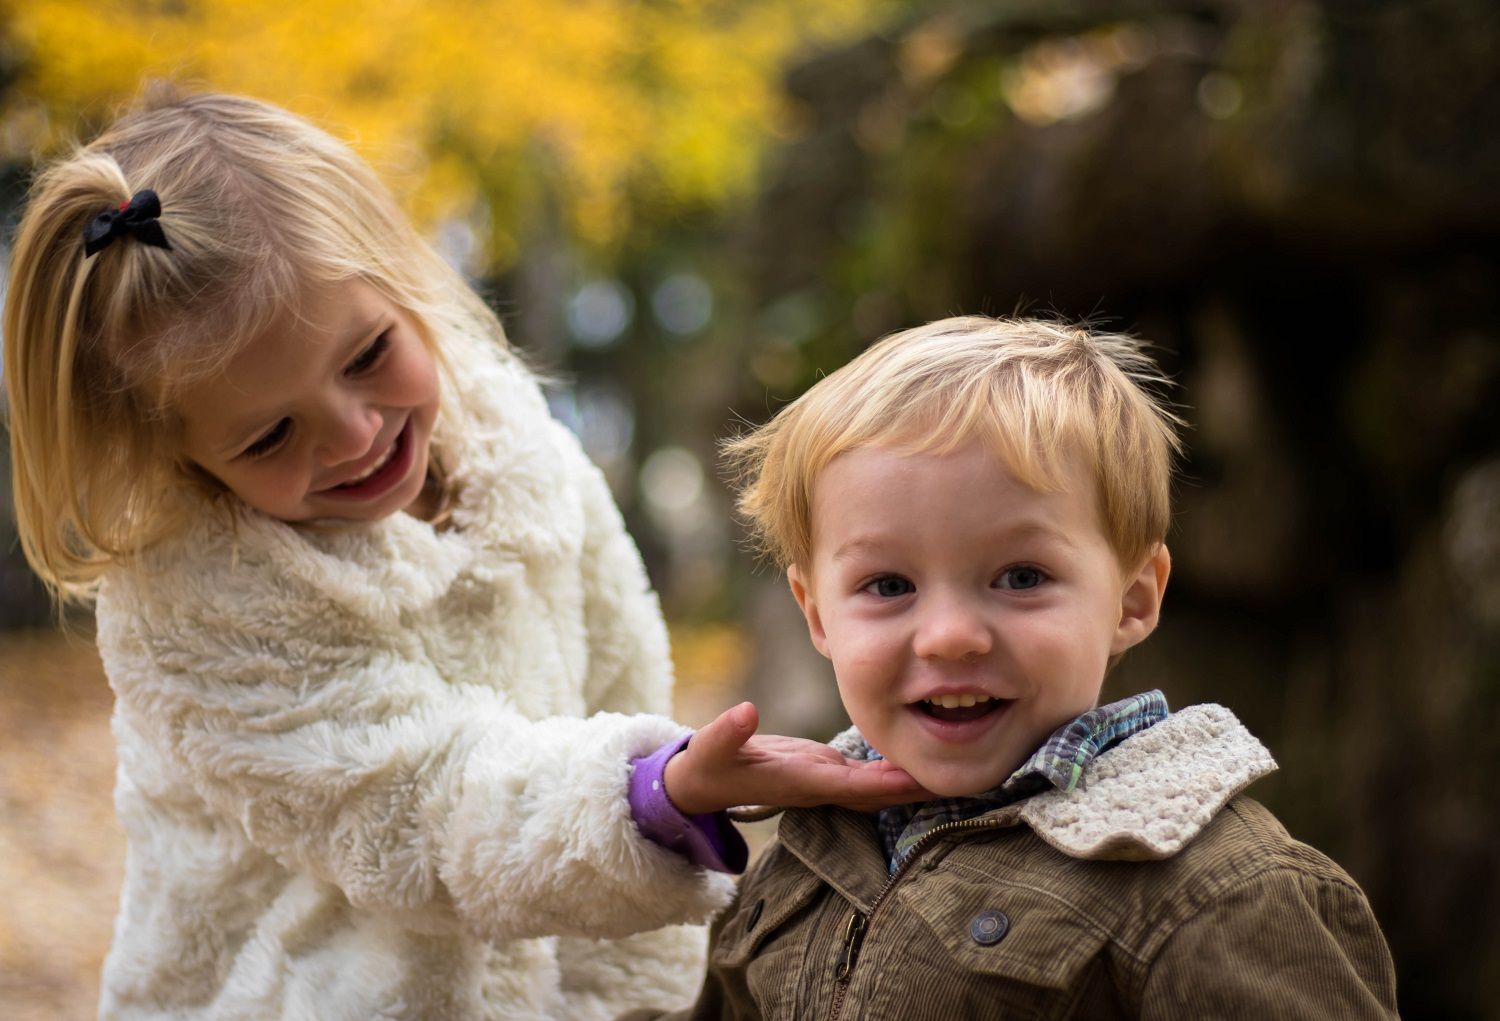 Three pillars of having happy children